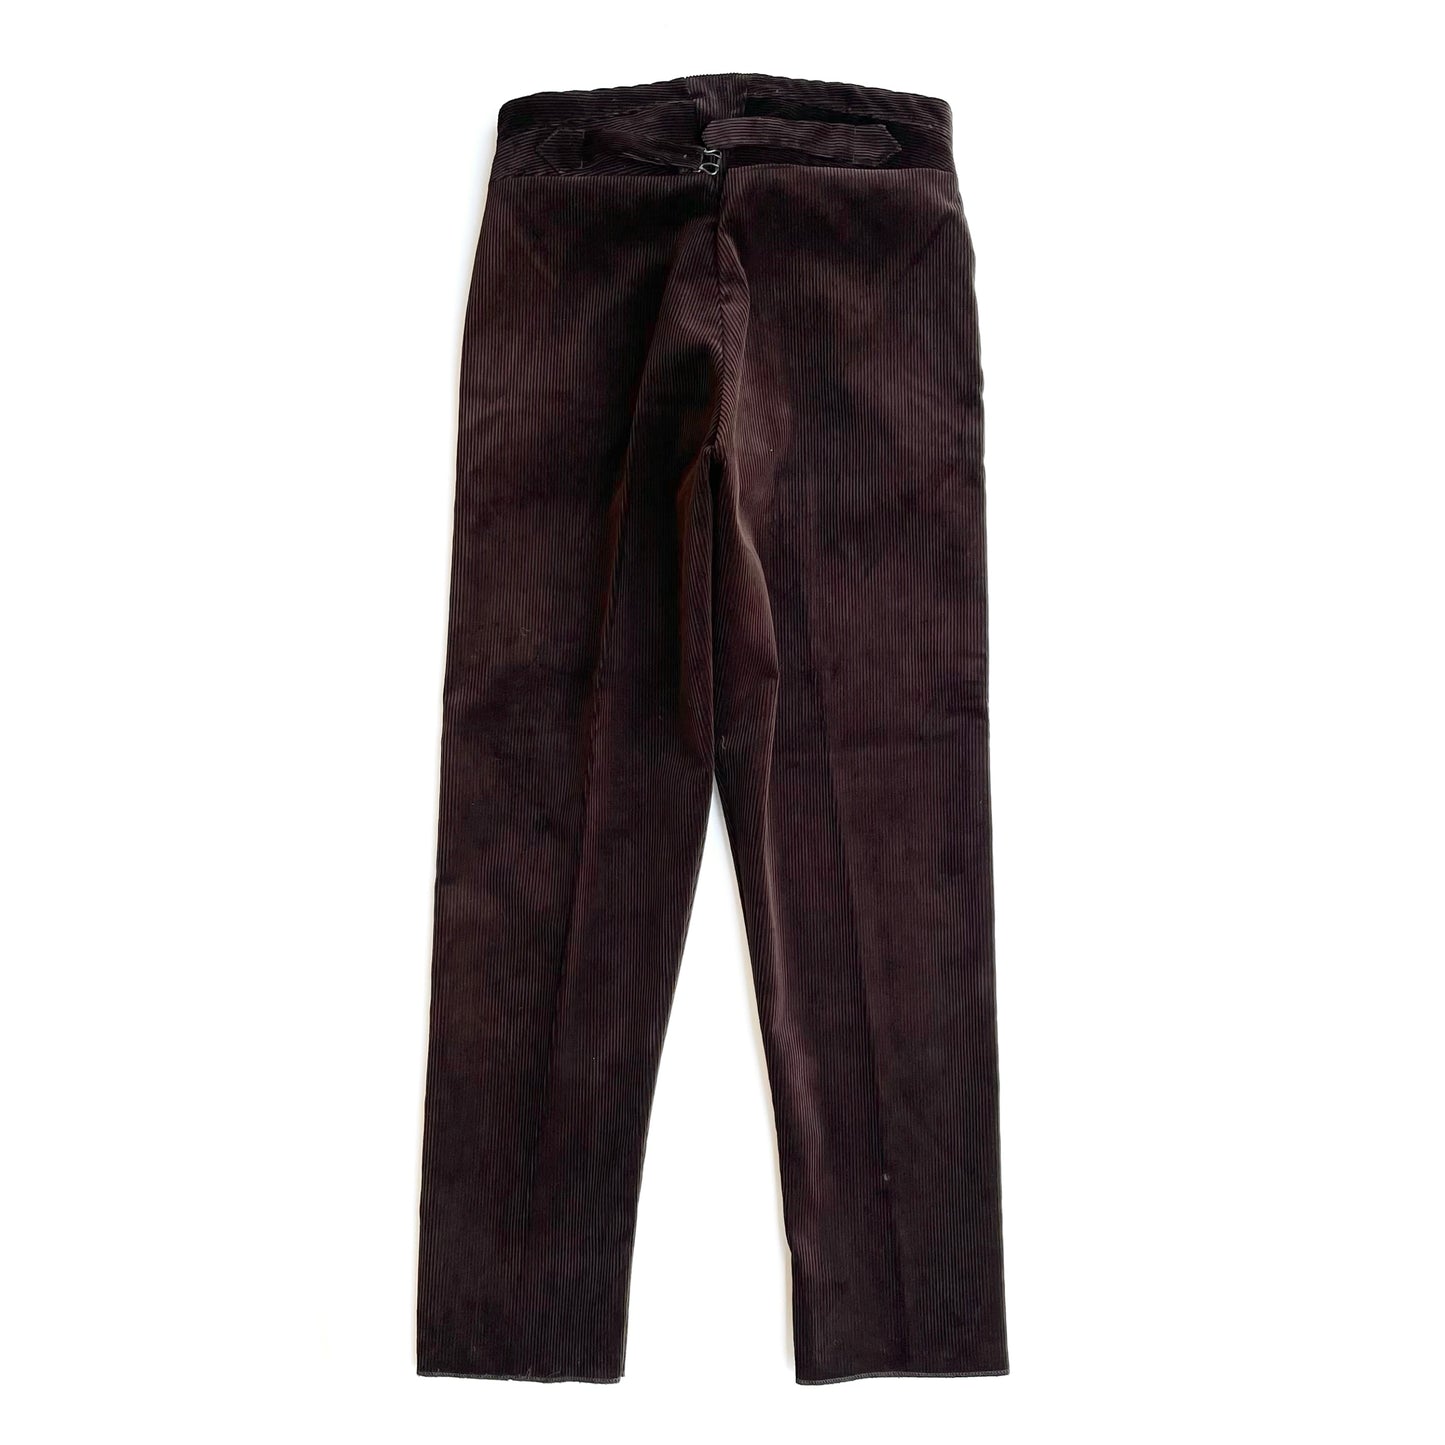 1915 pantalones / pana de pana inglesa marrón